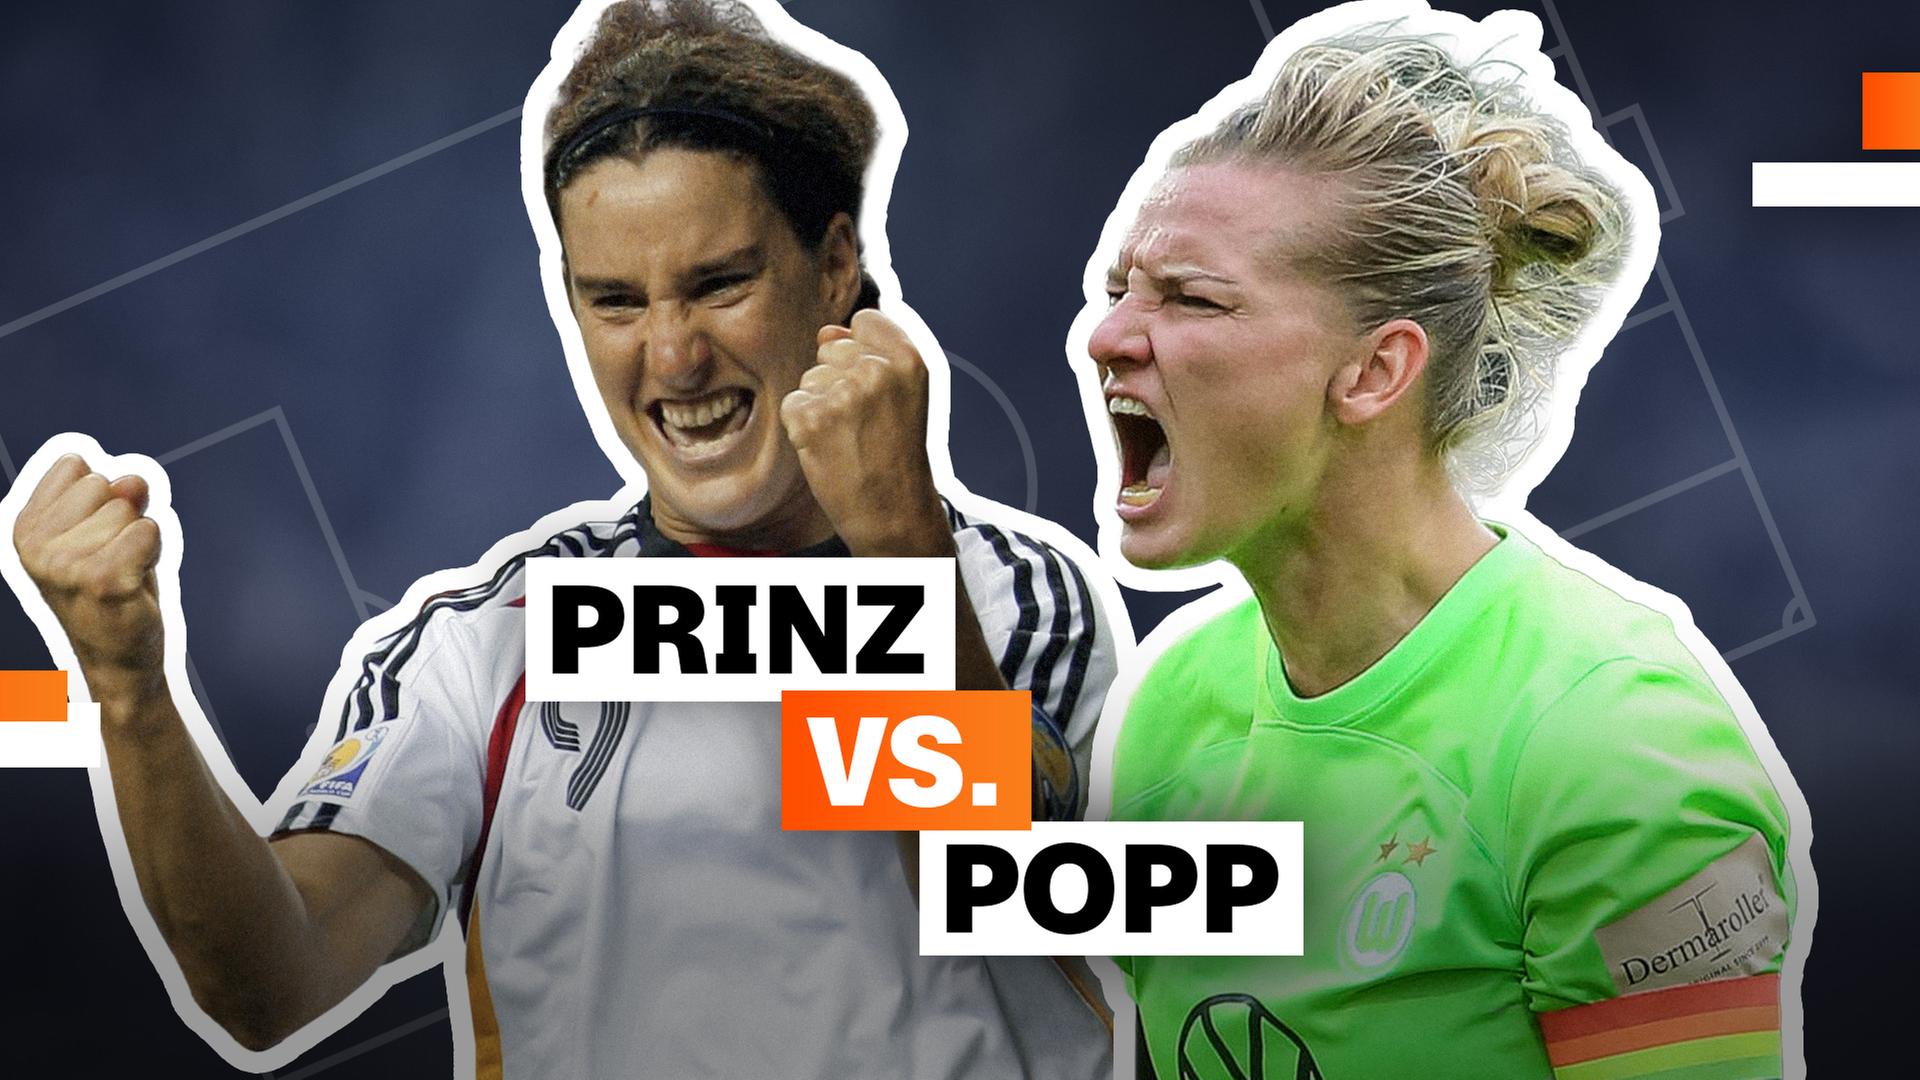 Prinz vs. Popp